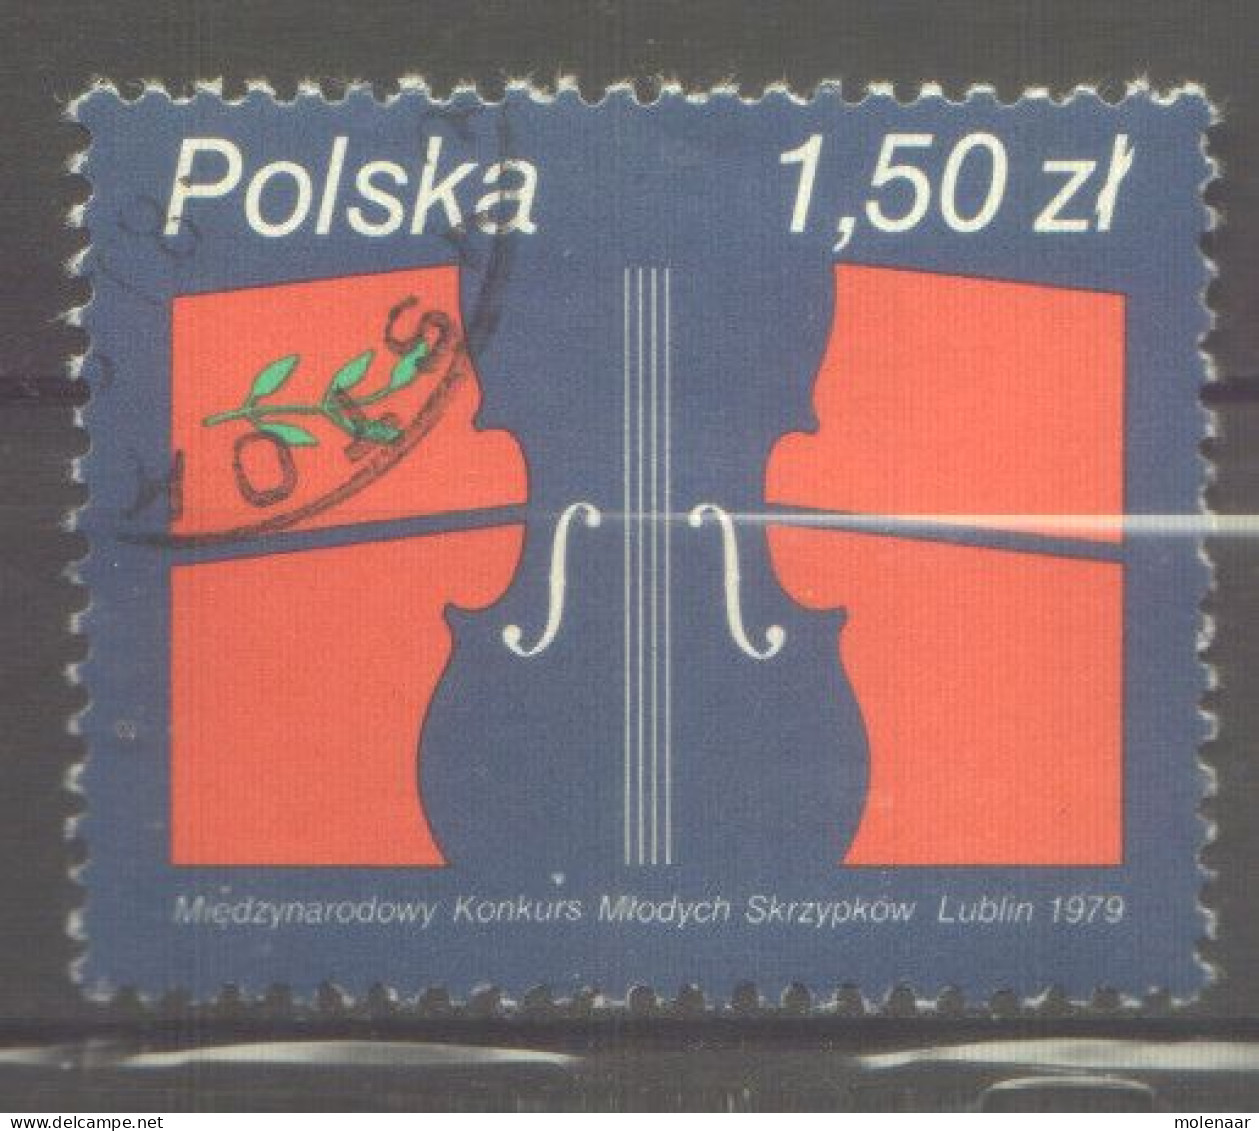 Postzegels > Europa > Polen > 1944-.... Republiek > 1971-80 > Gebruikt  2643 (12174) - Used Stamps